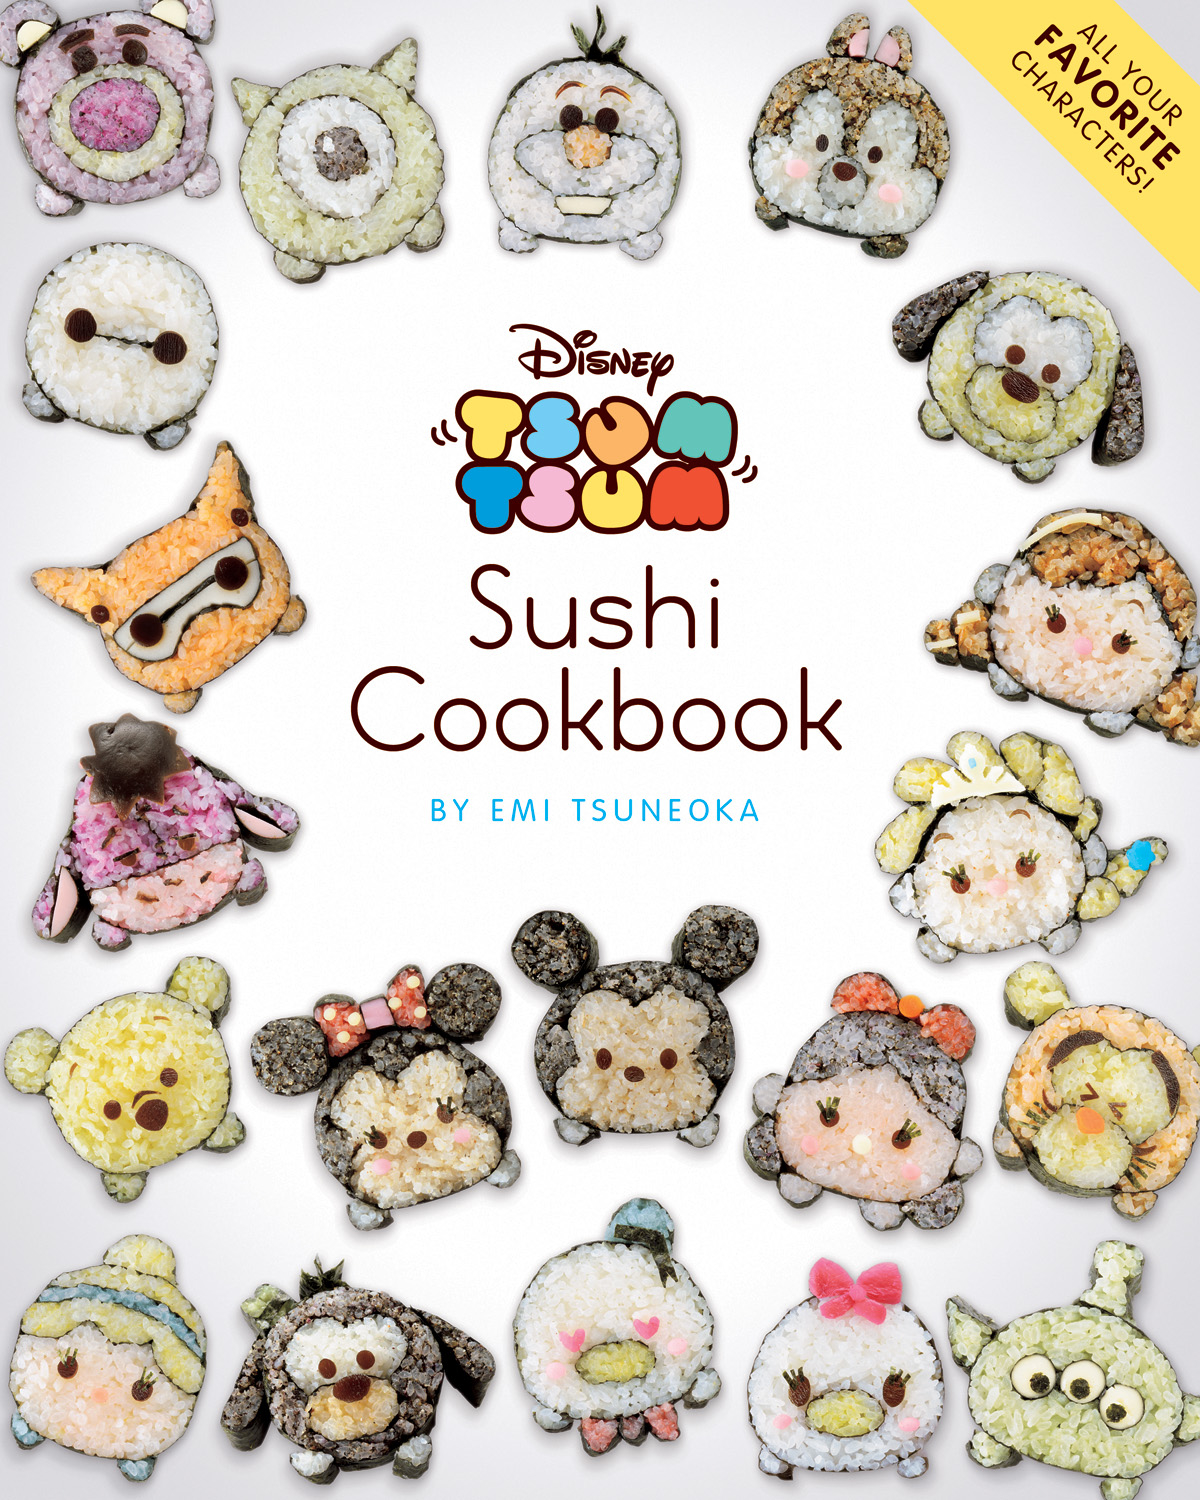 Disney Tsum Tsum Sushi Cookbook Soft Cover